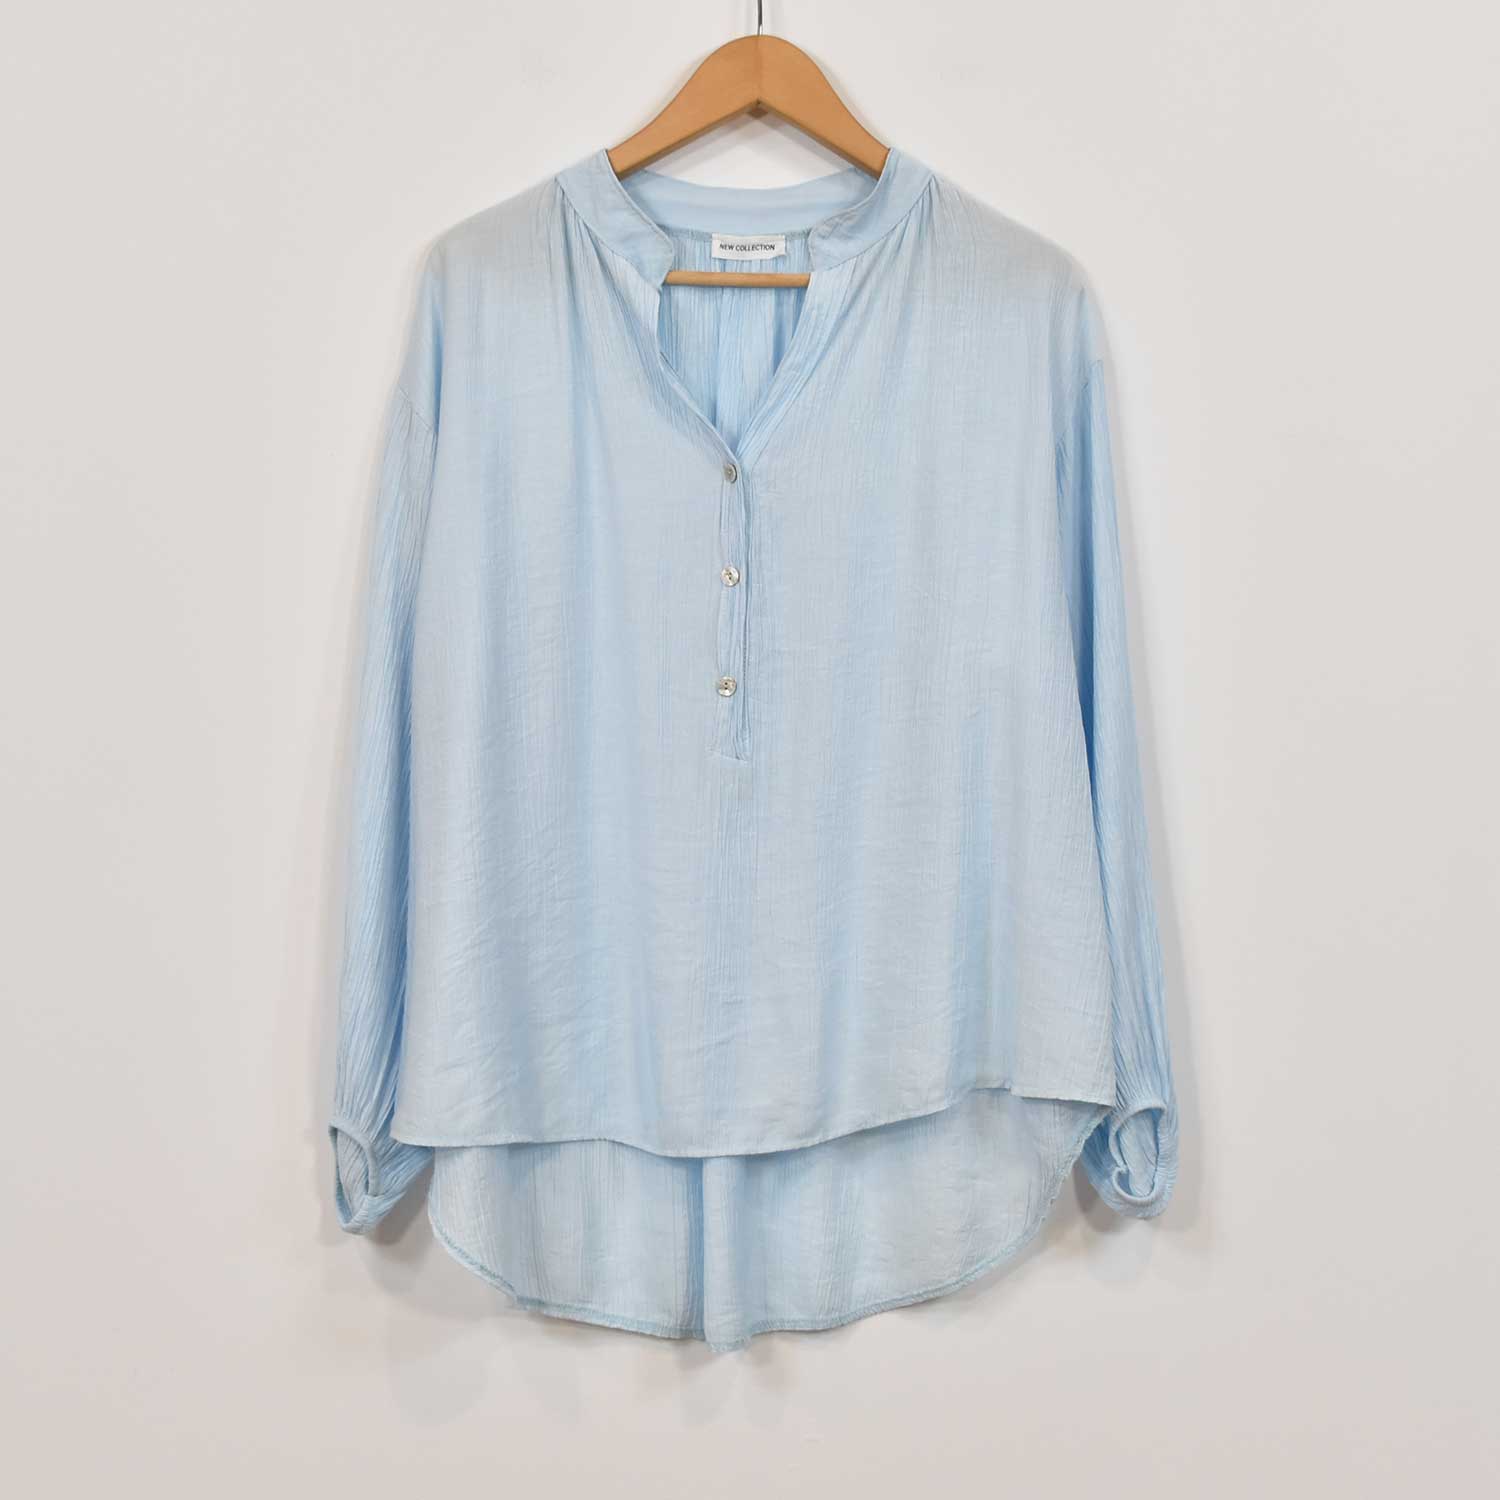 Light blue ruffled blouse